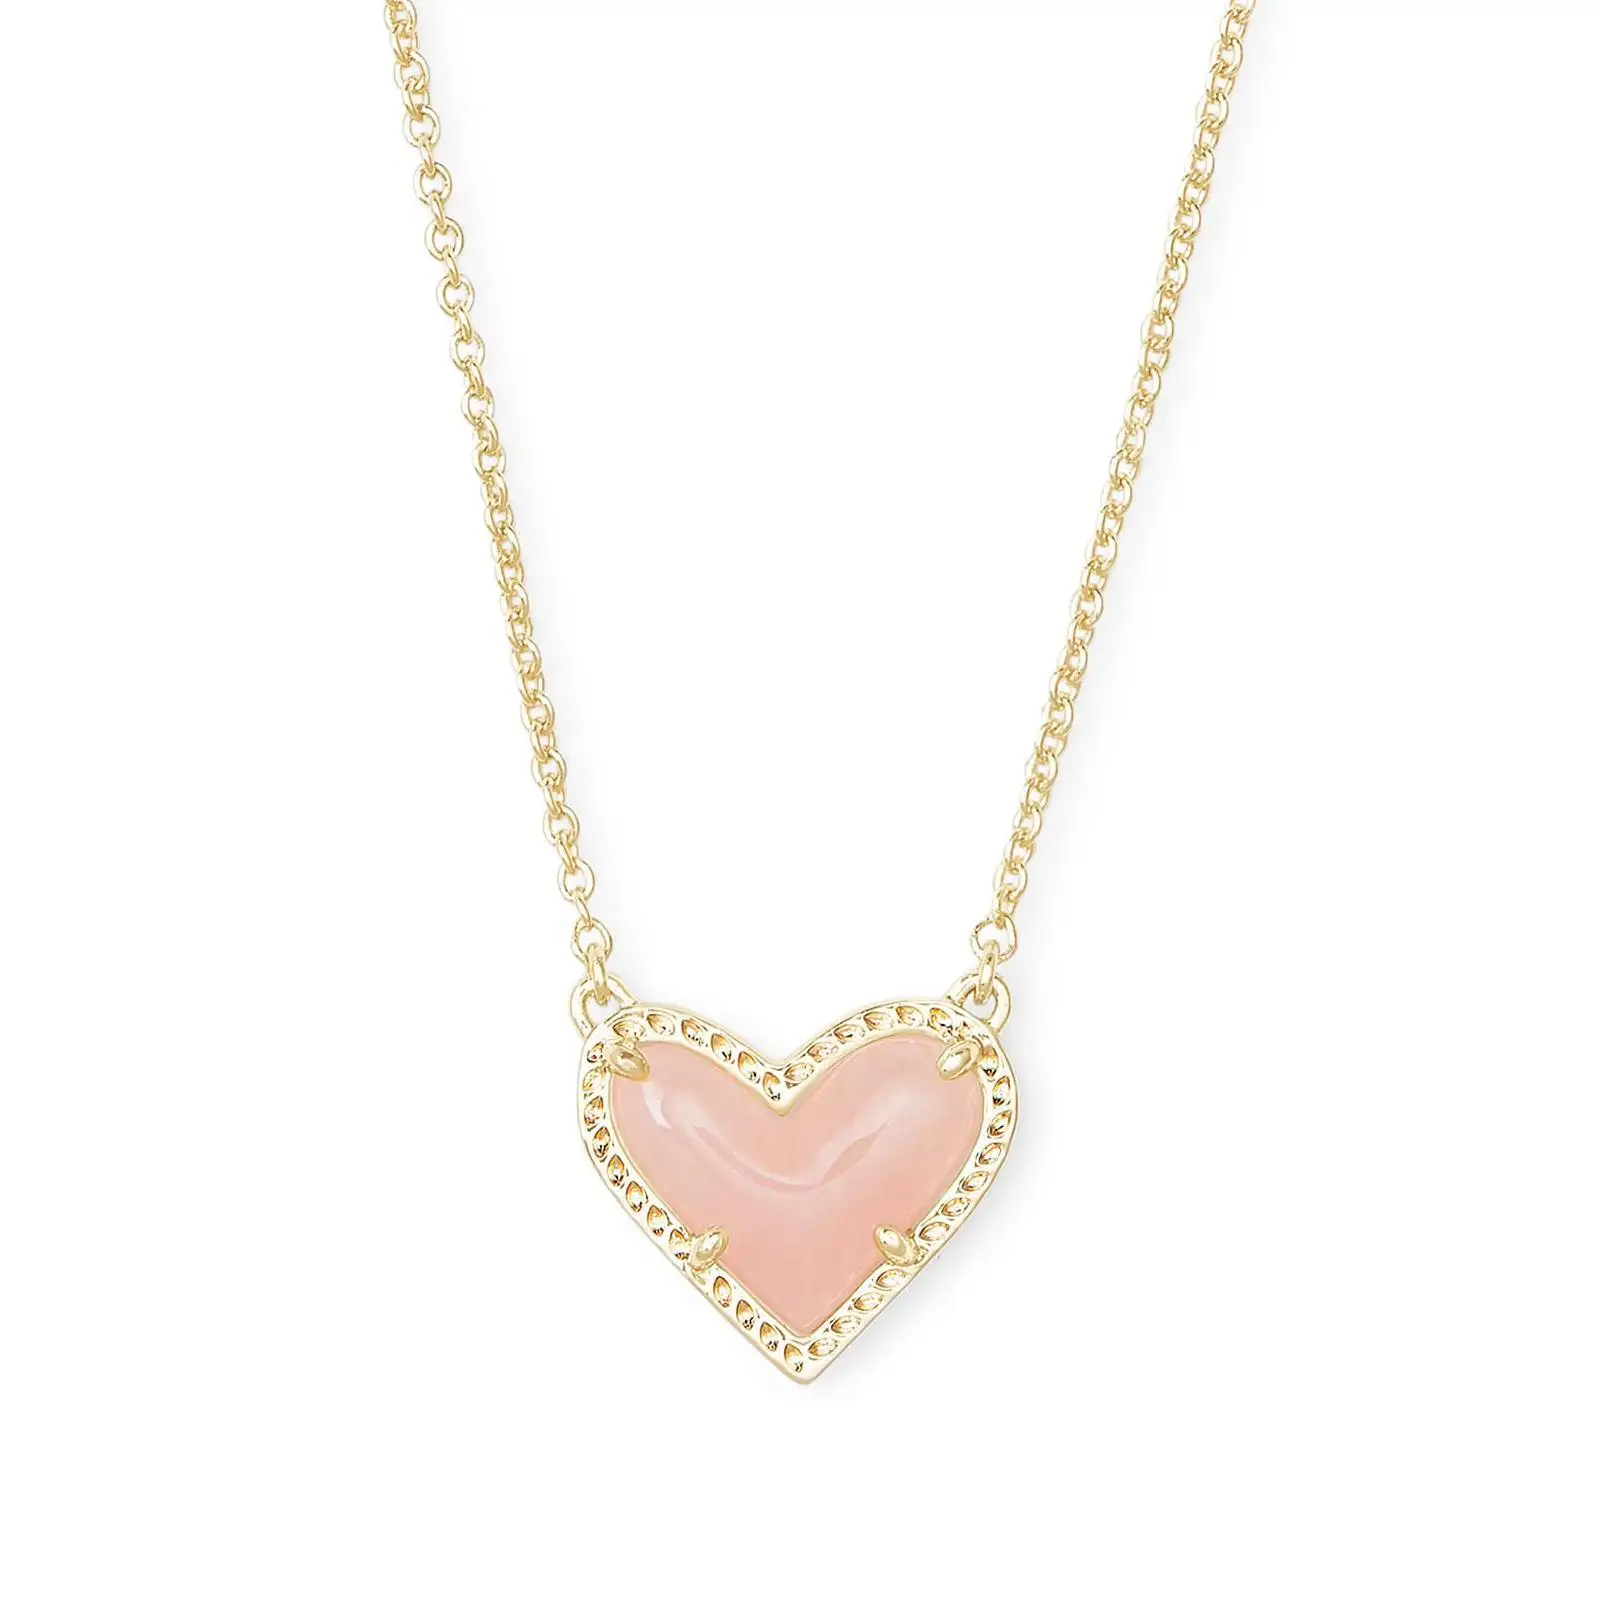 Neue trendige Edelstahl-Halsband für Damen Schmuck Schmetterling Perlen Herz Anhänger Halskette Geburtstagsgeschenk